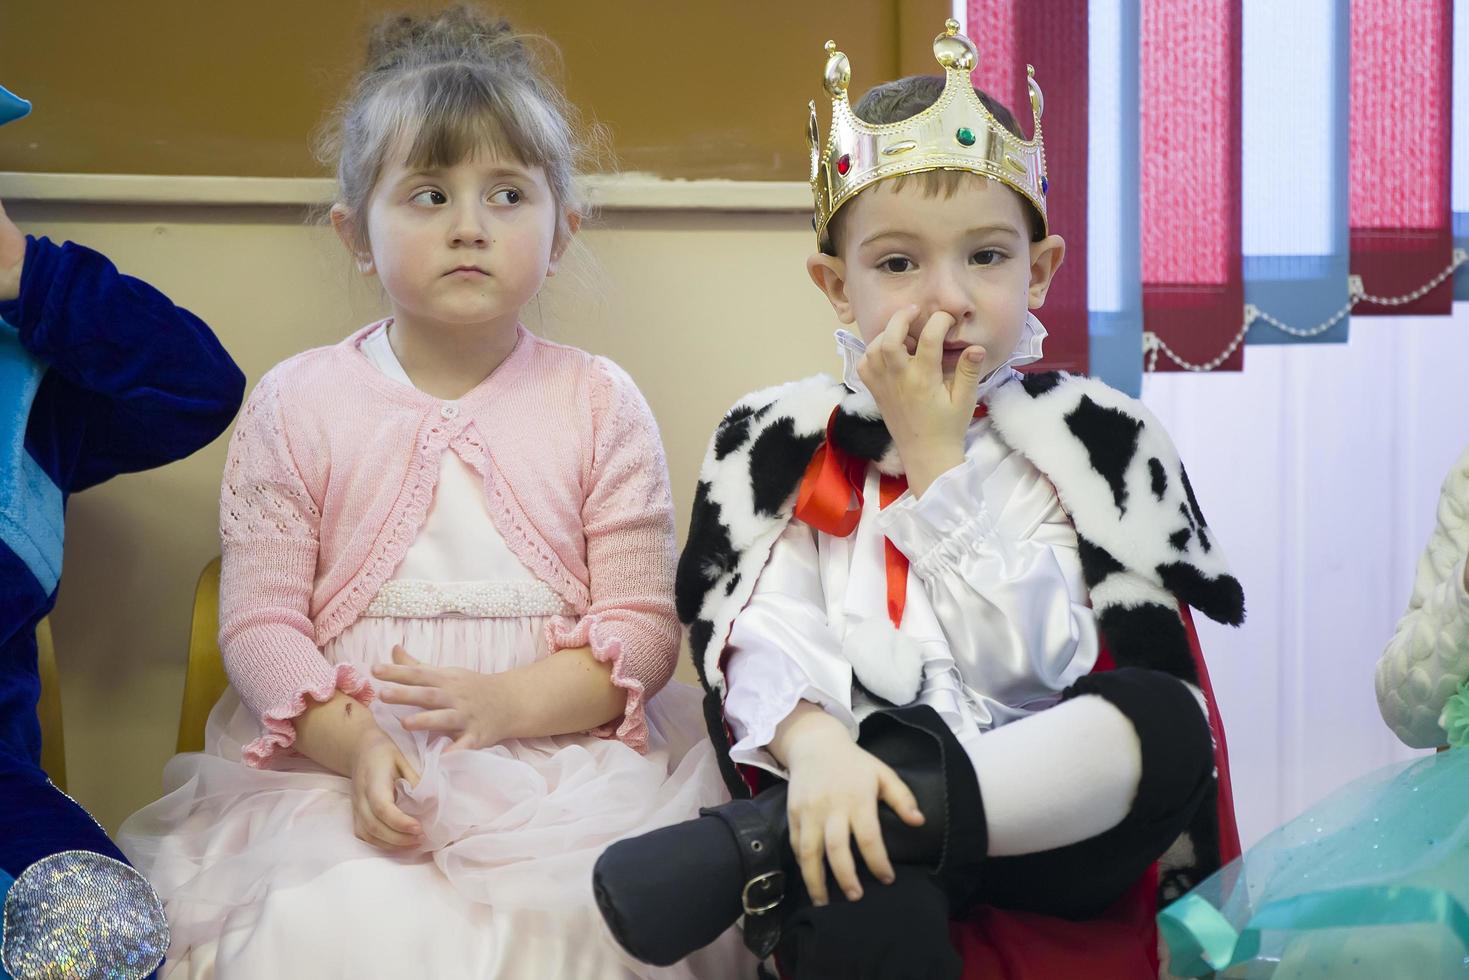 barn i karneval kostymer på de jul semester.pojke kung och flicka prinsessor foto